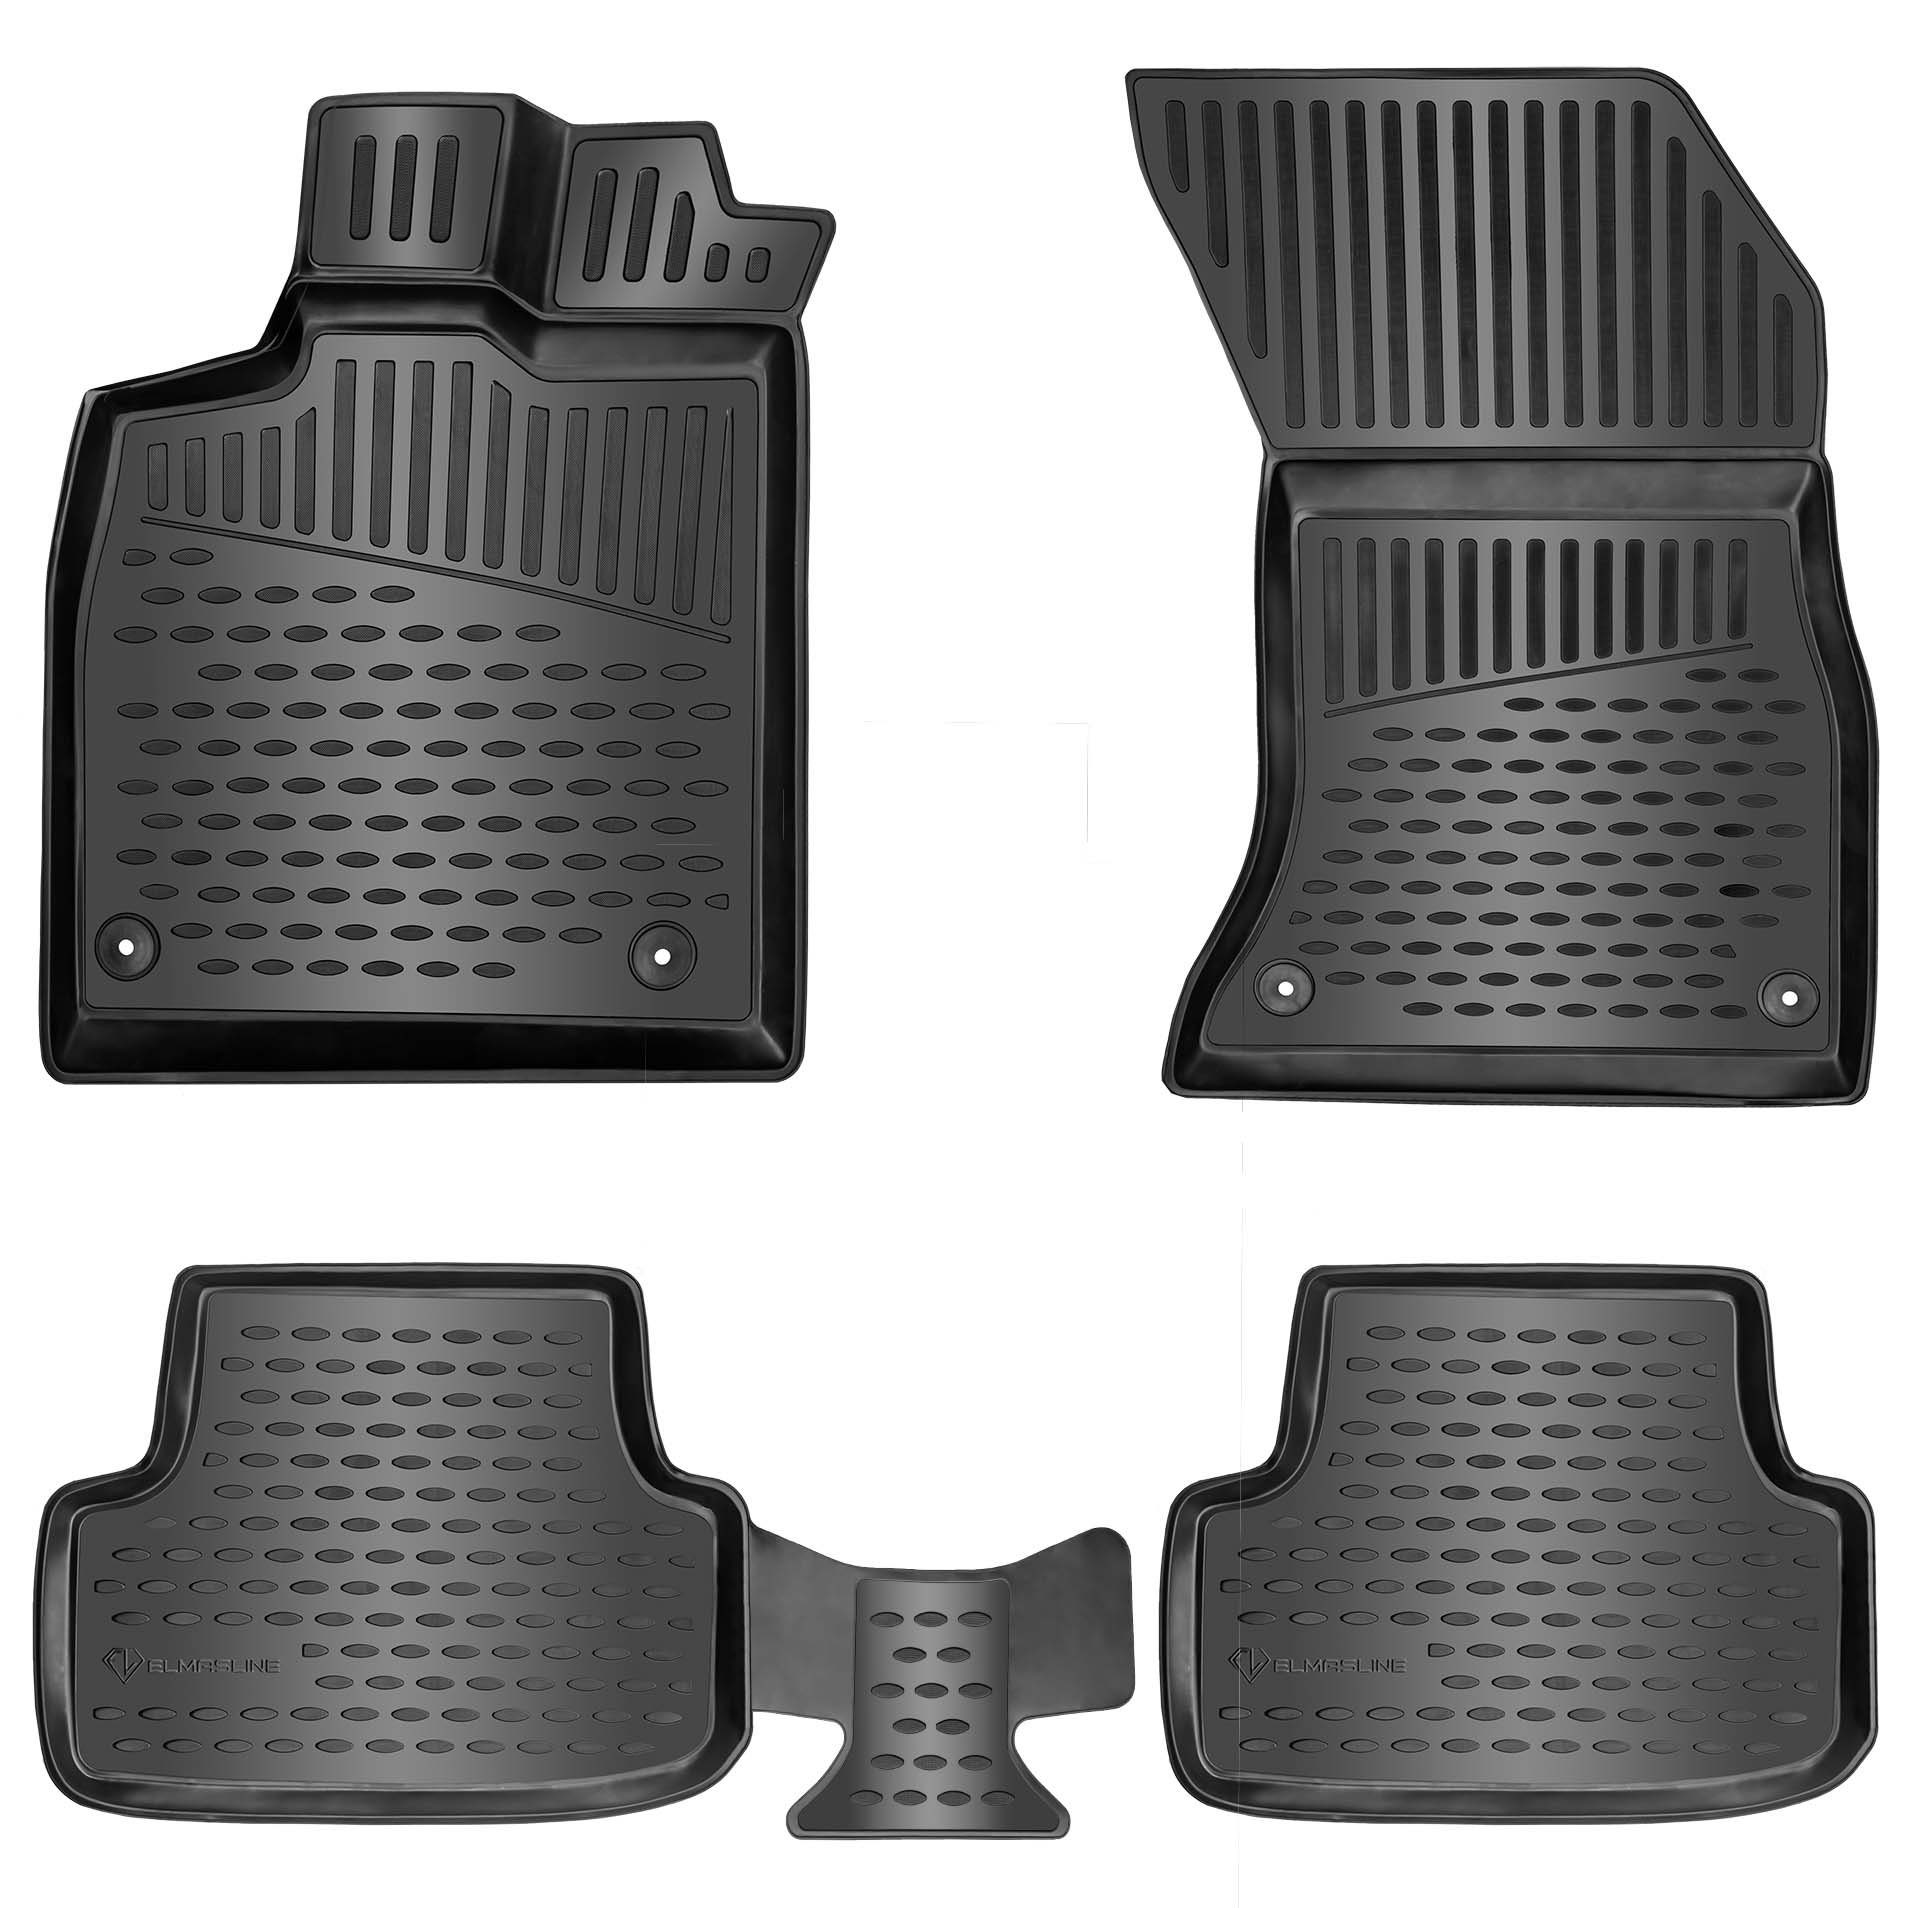 ELMASLINE Auto-Fußmatten Gummi (4 St), für PEUGEOT 5008 I (2009-2017) 1. Generation - 3D Gummimatten mit extra hohem Rand für mehr Schutz - Passend für Baujahre:, 2009 - 2017